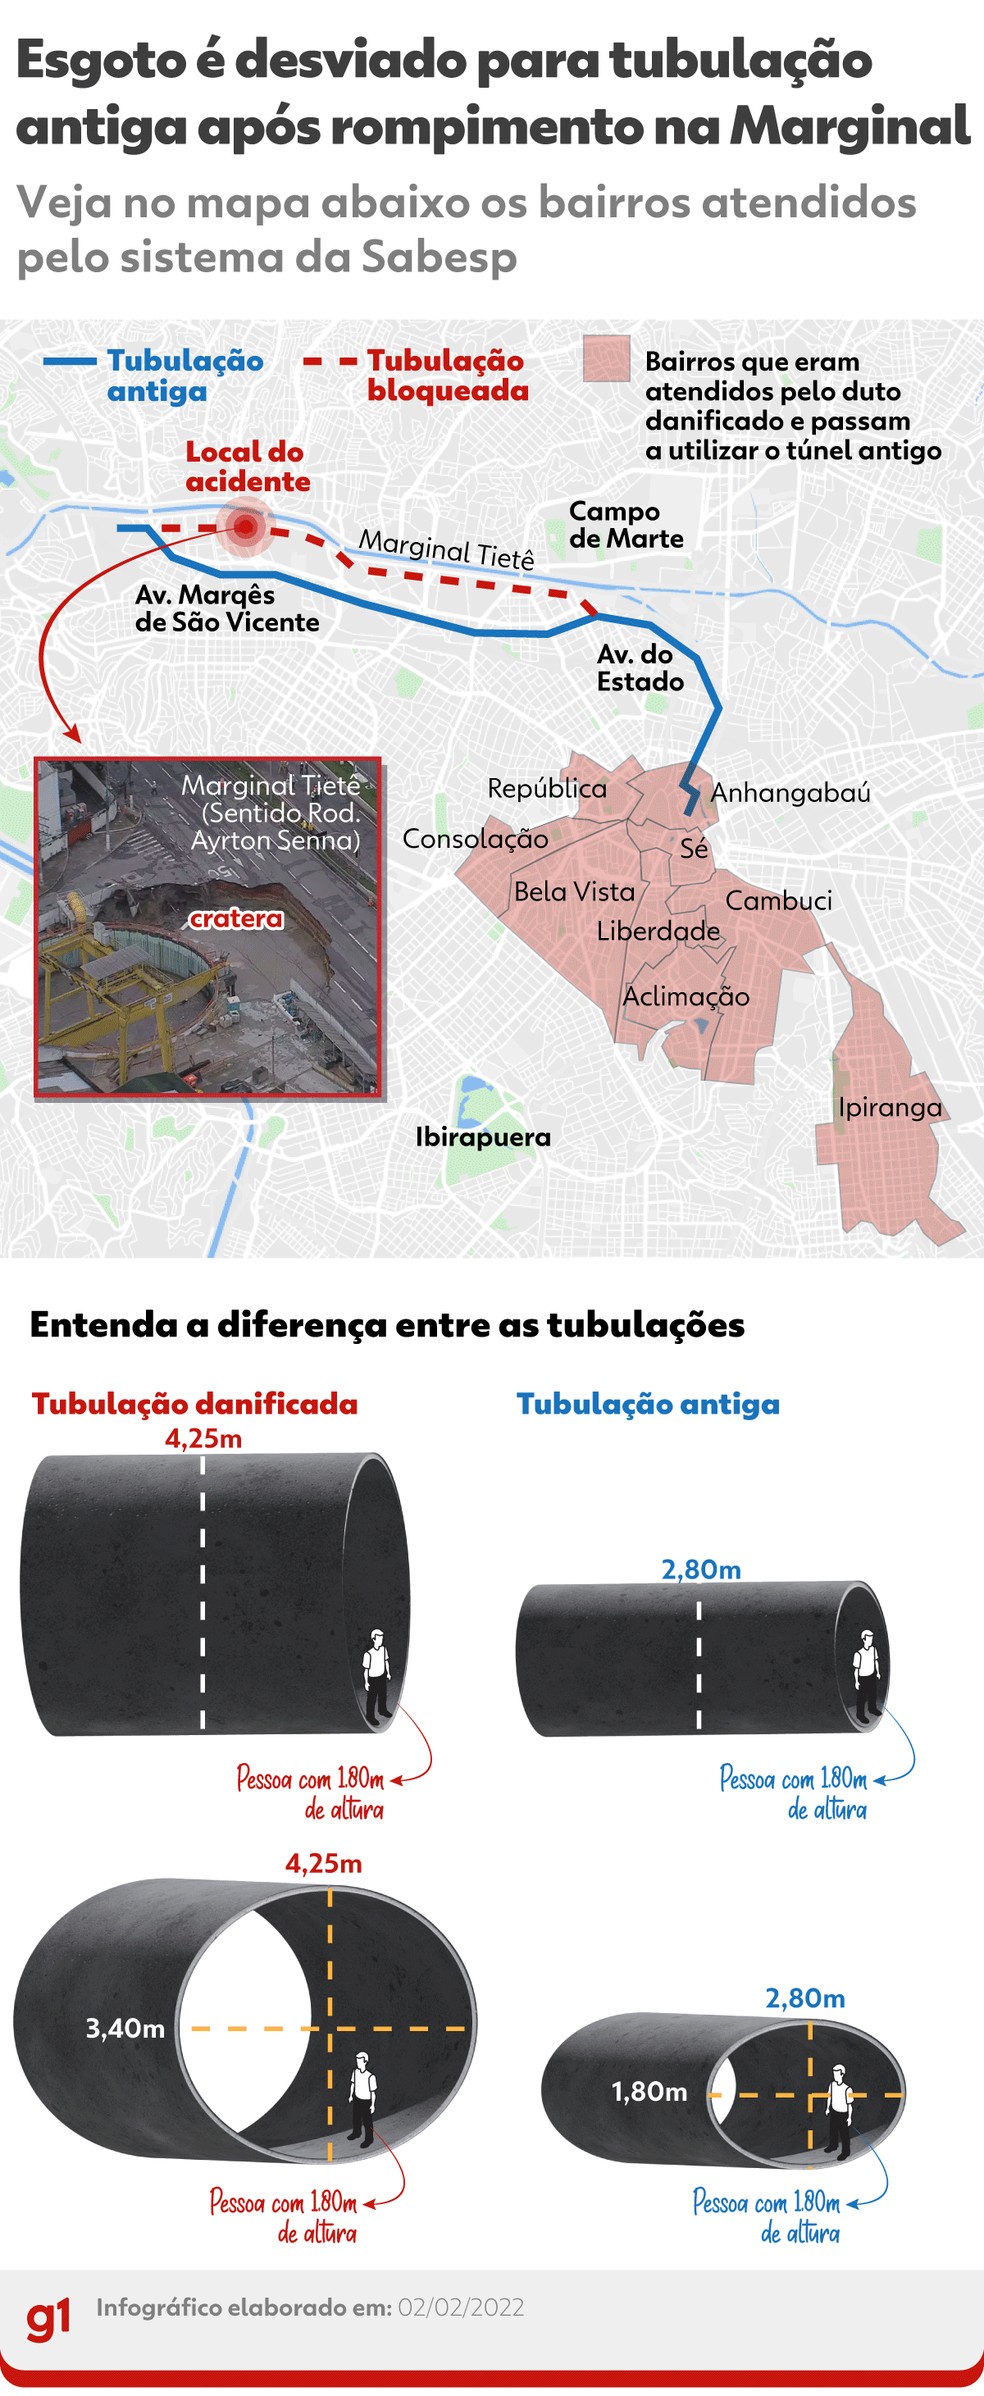 Mapa mostra desvio que será feito em esgoto após rompimento de supertúnel na Marginal Tietê. — Foto: Guilherme Pinheiro/g1